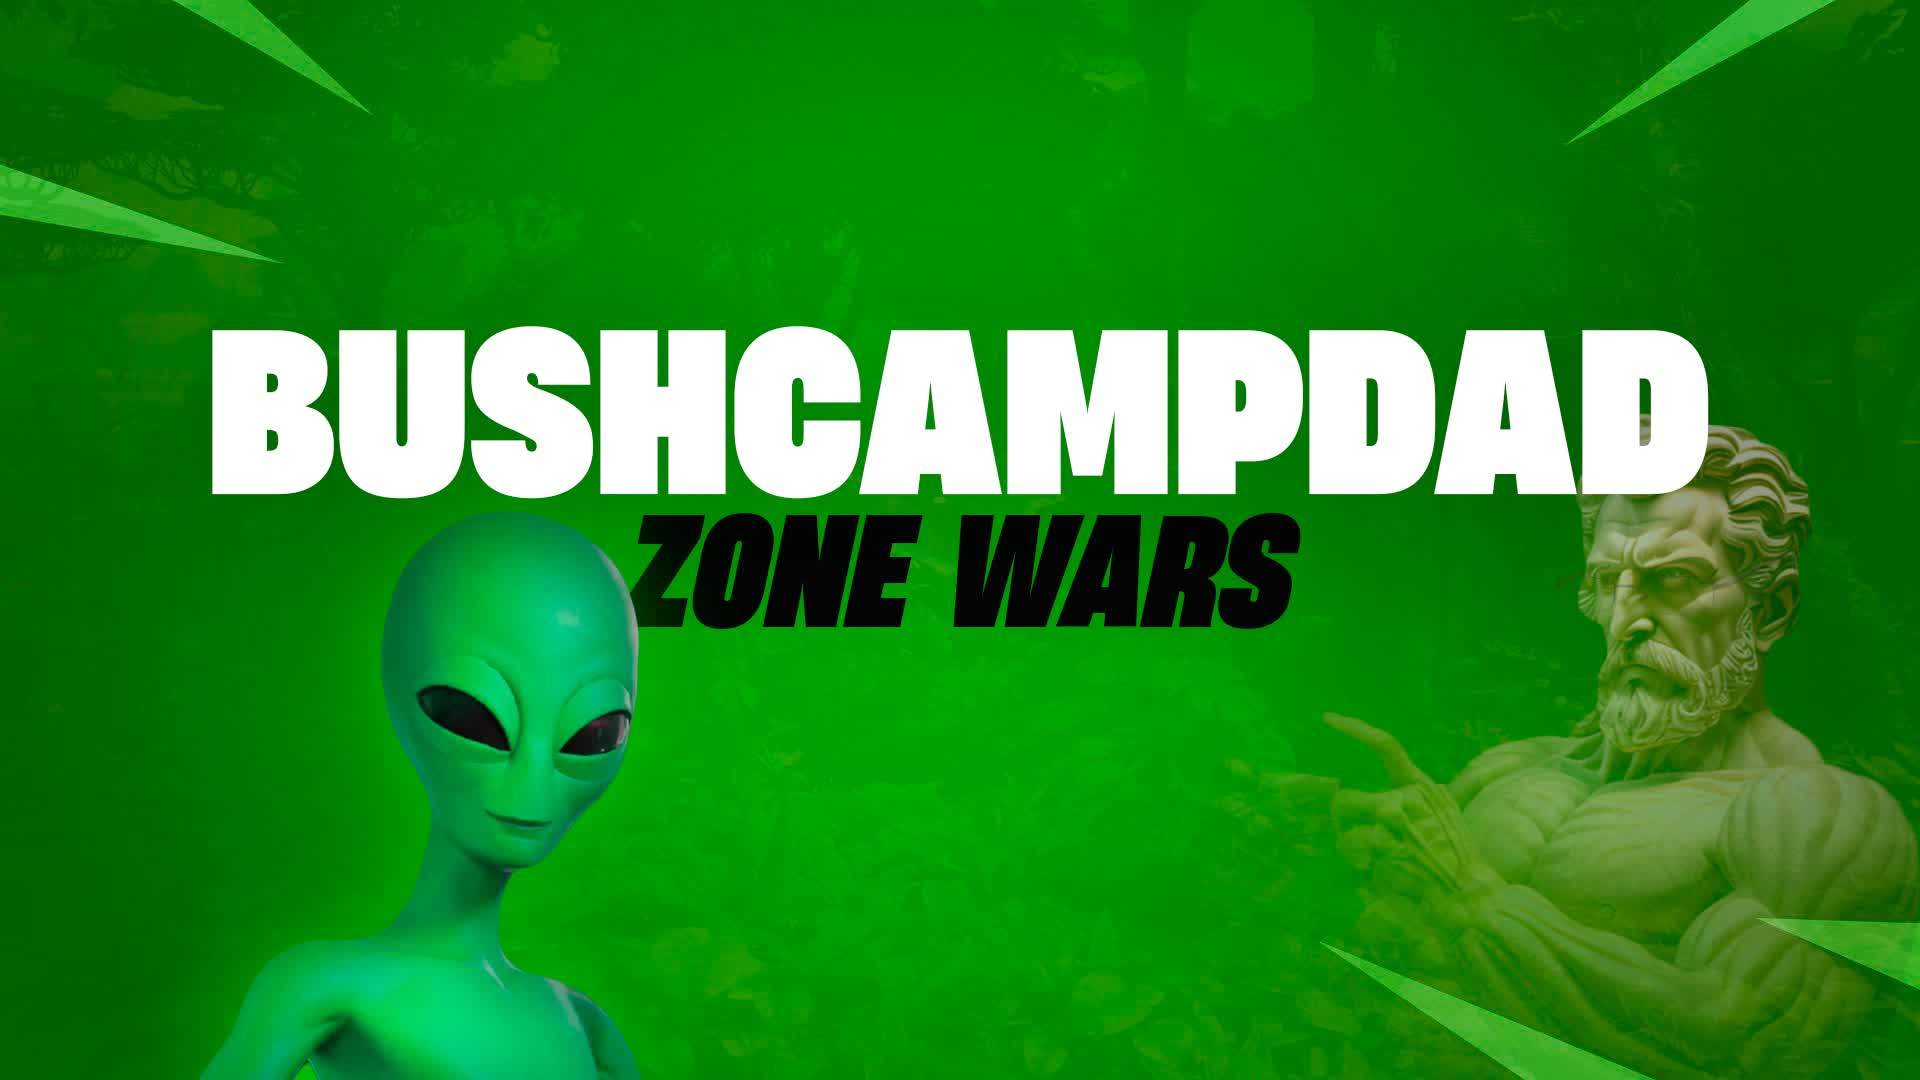 BushCampDad Zone Wars 👽